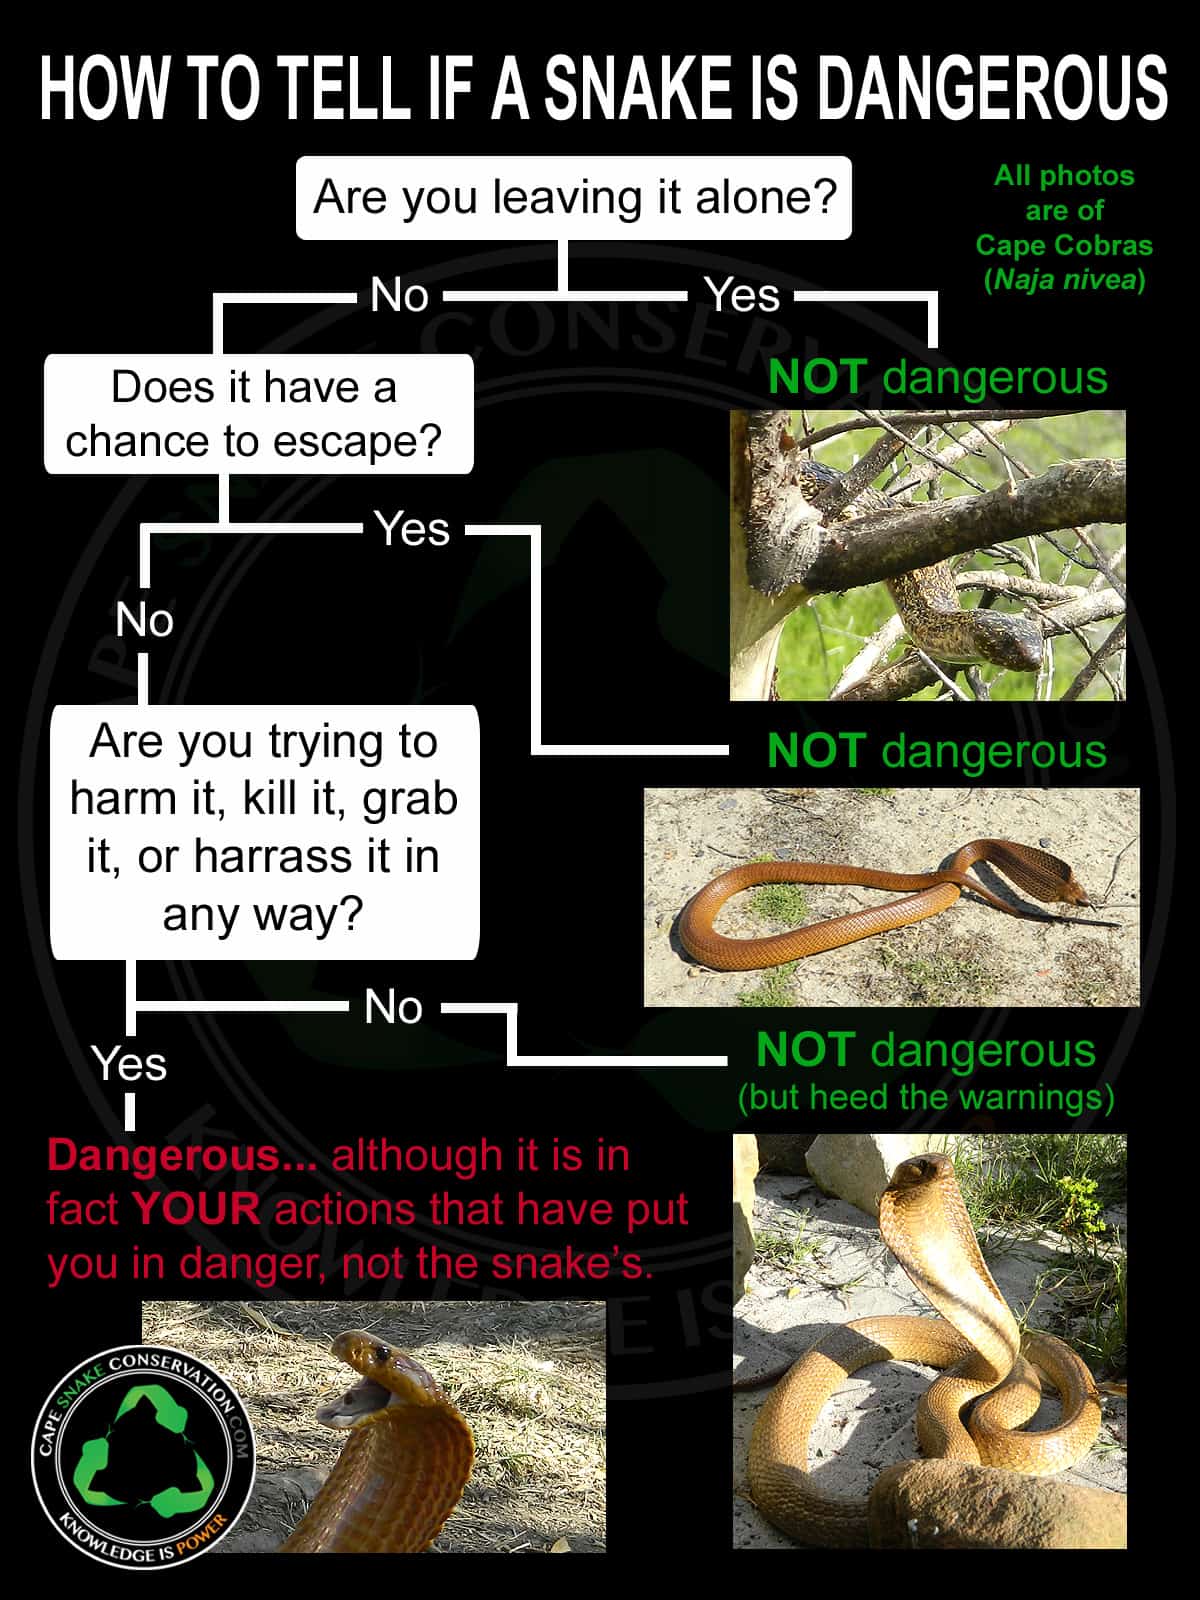 Qué hacer si te encuentras con una serpiente mientras caminas